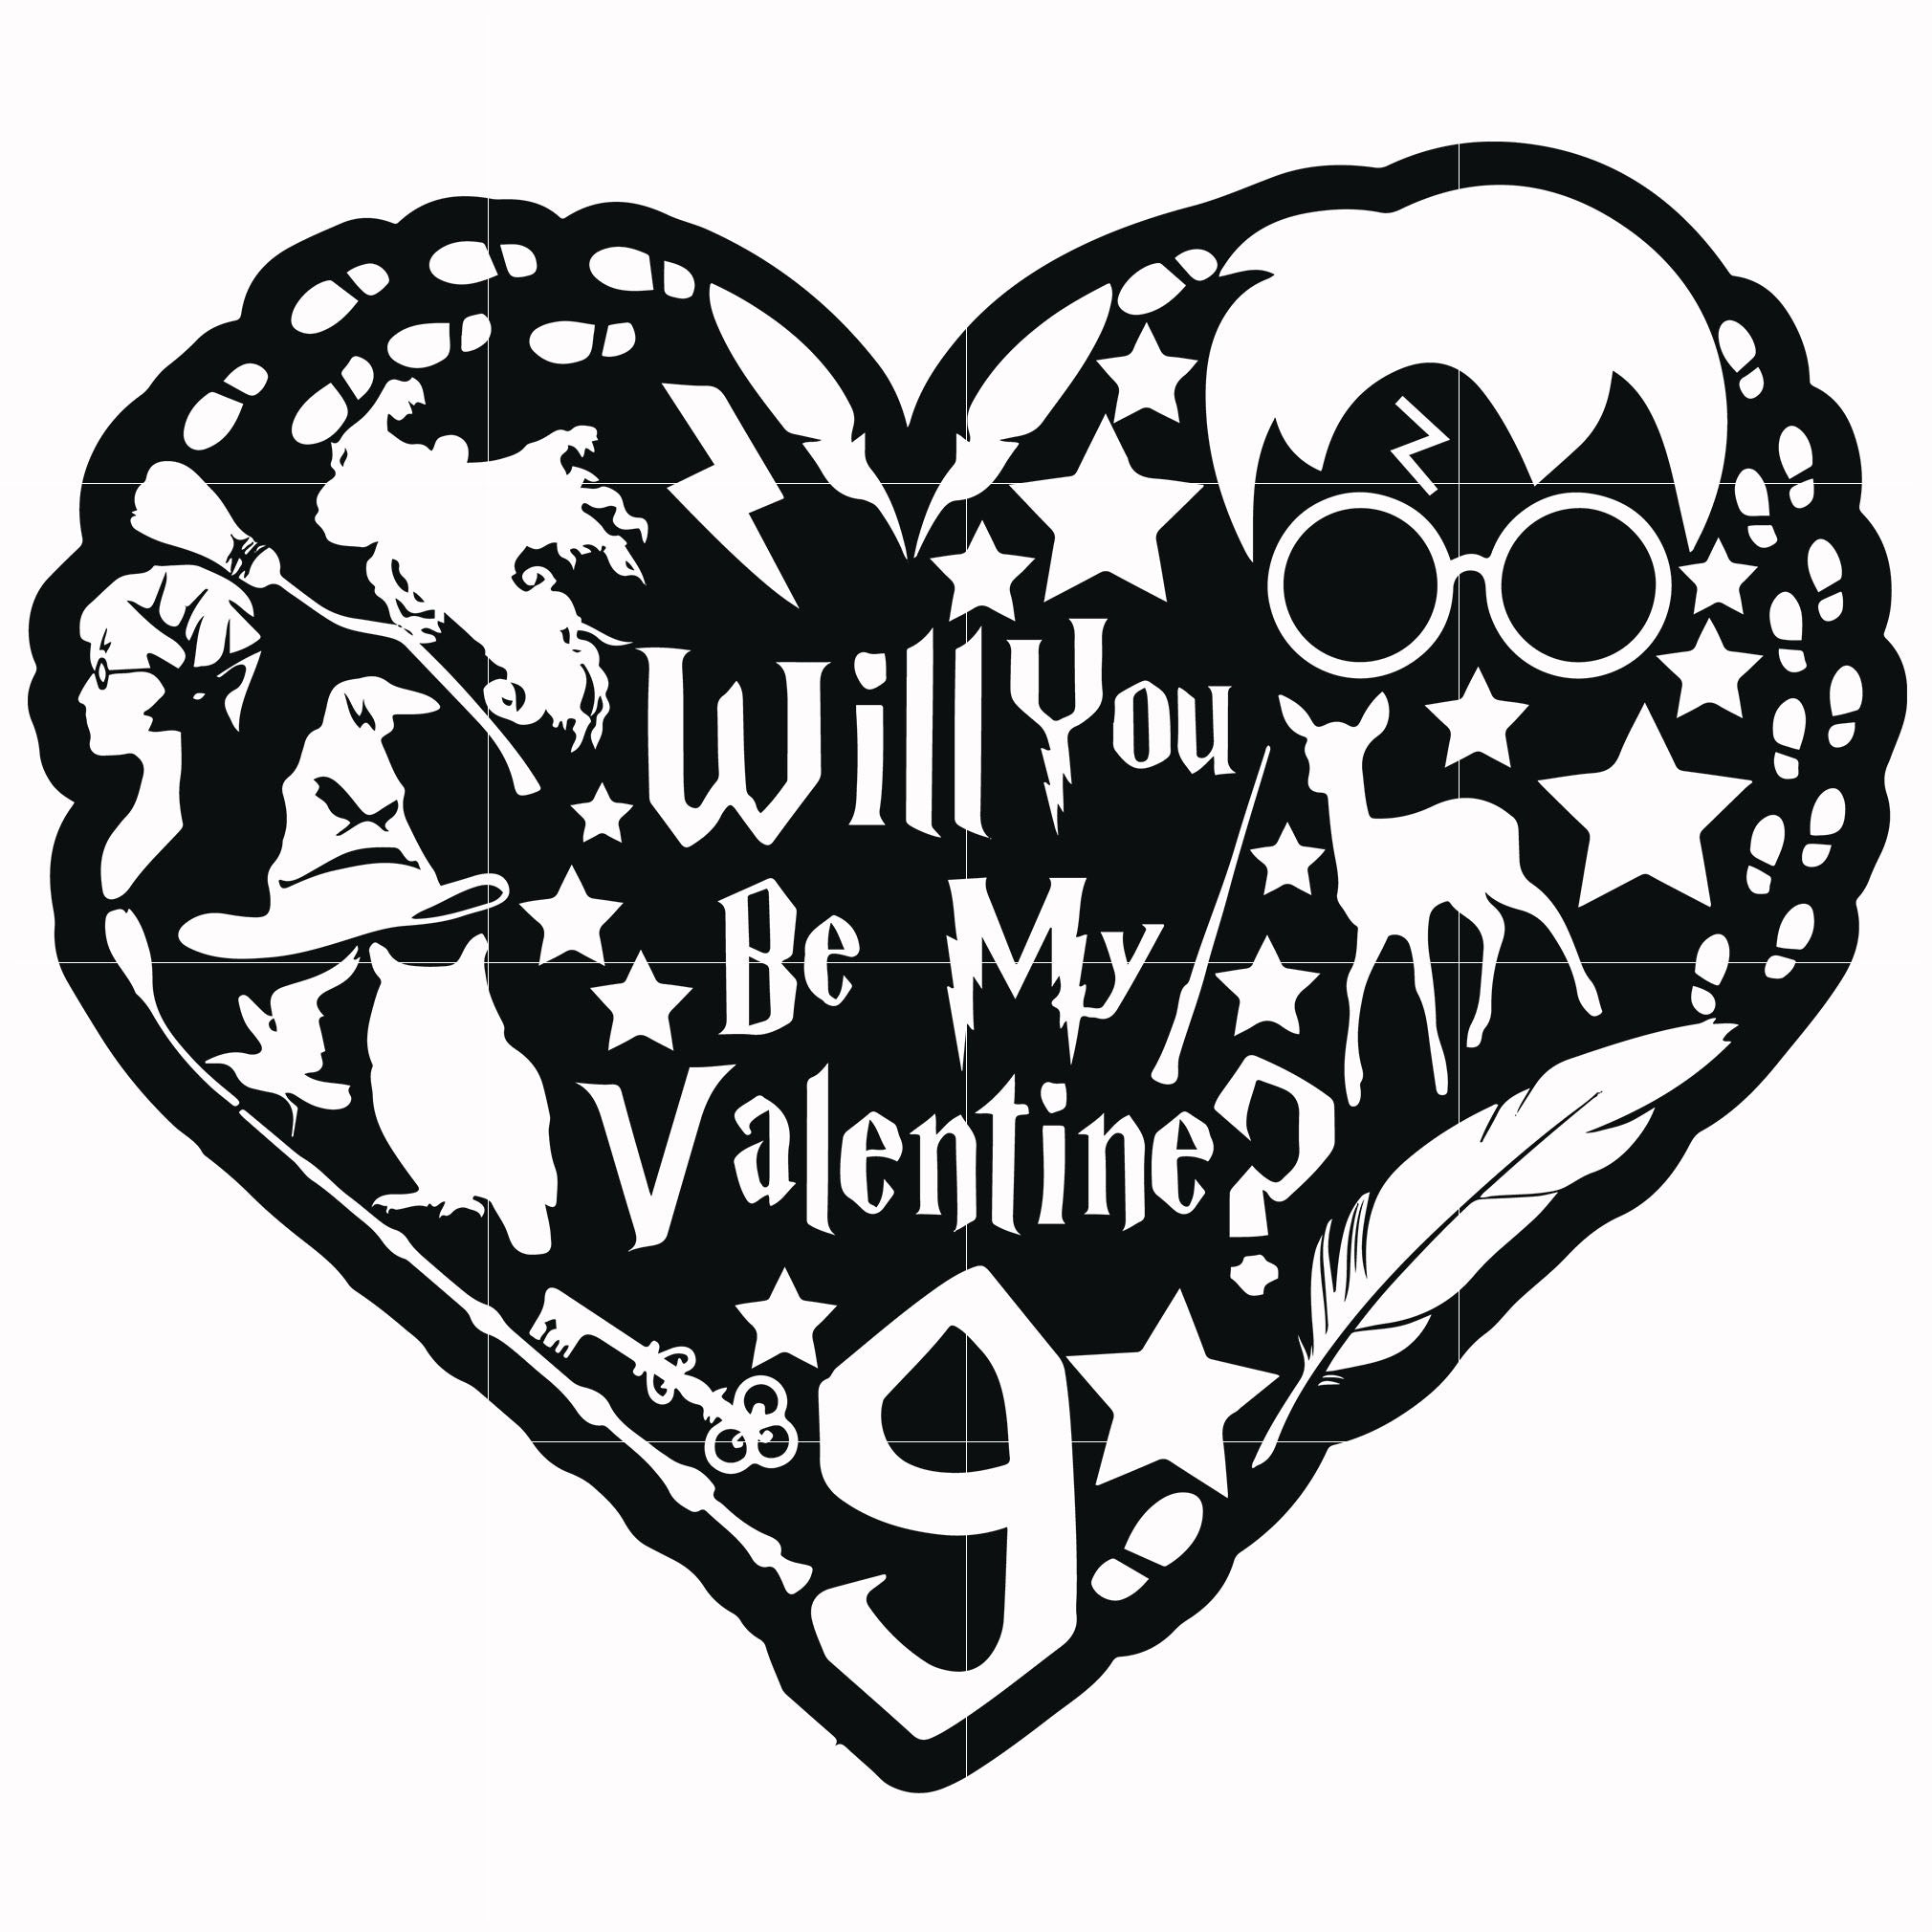 Download Will You Be My Valentine Svg Harry Potter Svg Potter Svg For Cut Sv Svgtrending